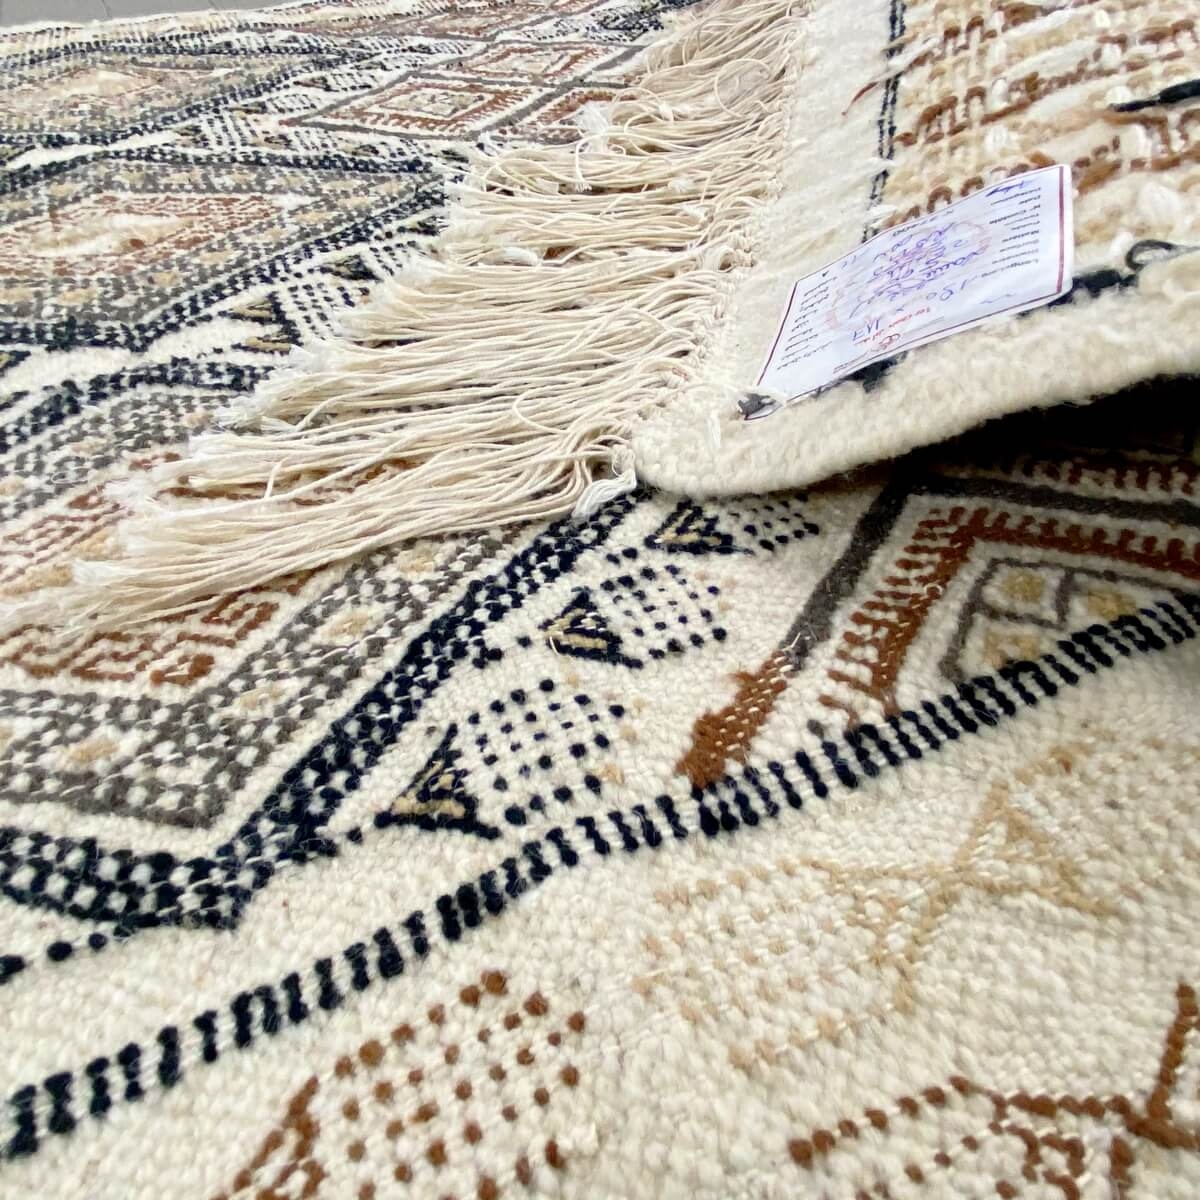 Berber carpet Rug Margoum Damdakul 115x190 White/Beige (Handmade, Wool, Tunisia) Tunisian margoum rug from the city of Kairouan.